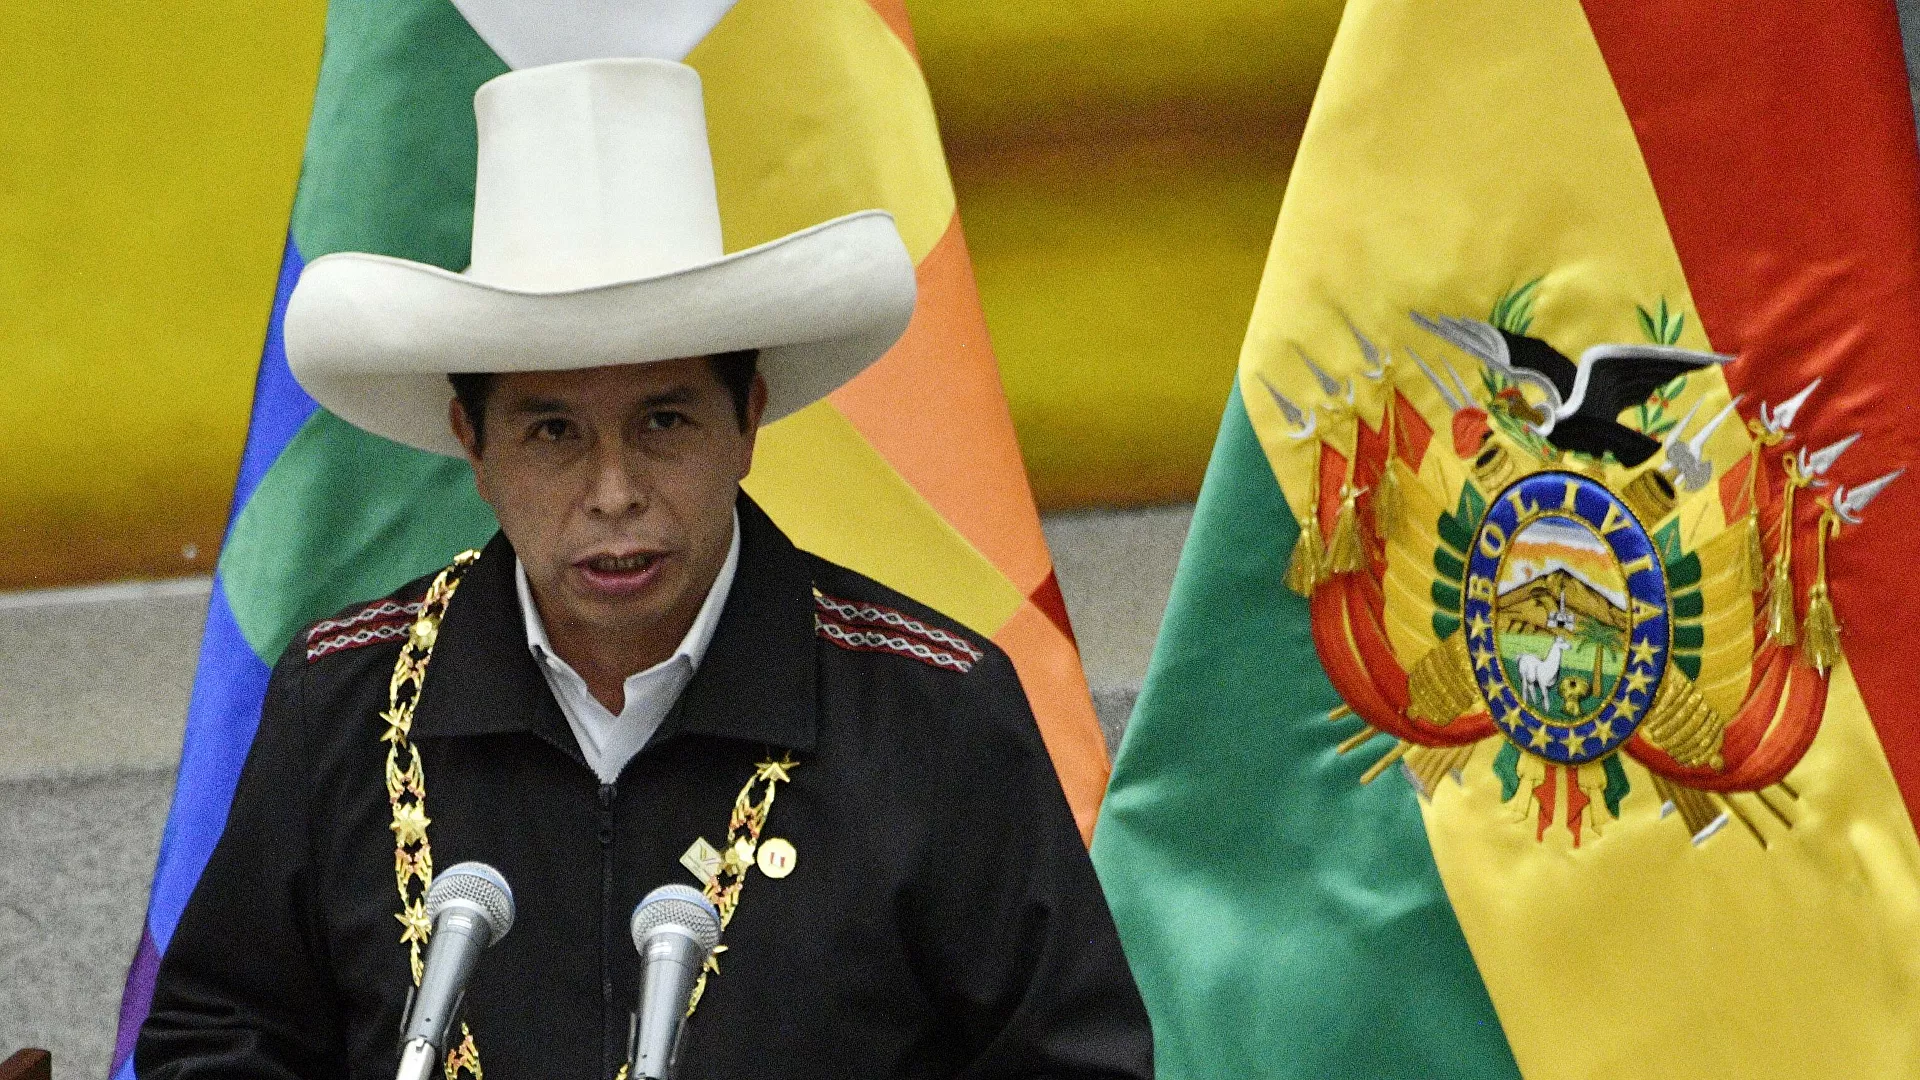  El procurador general de Perú denuncia al presidente por presuntos delitos de corrupción